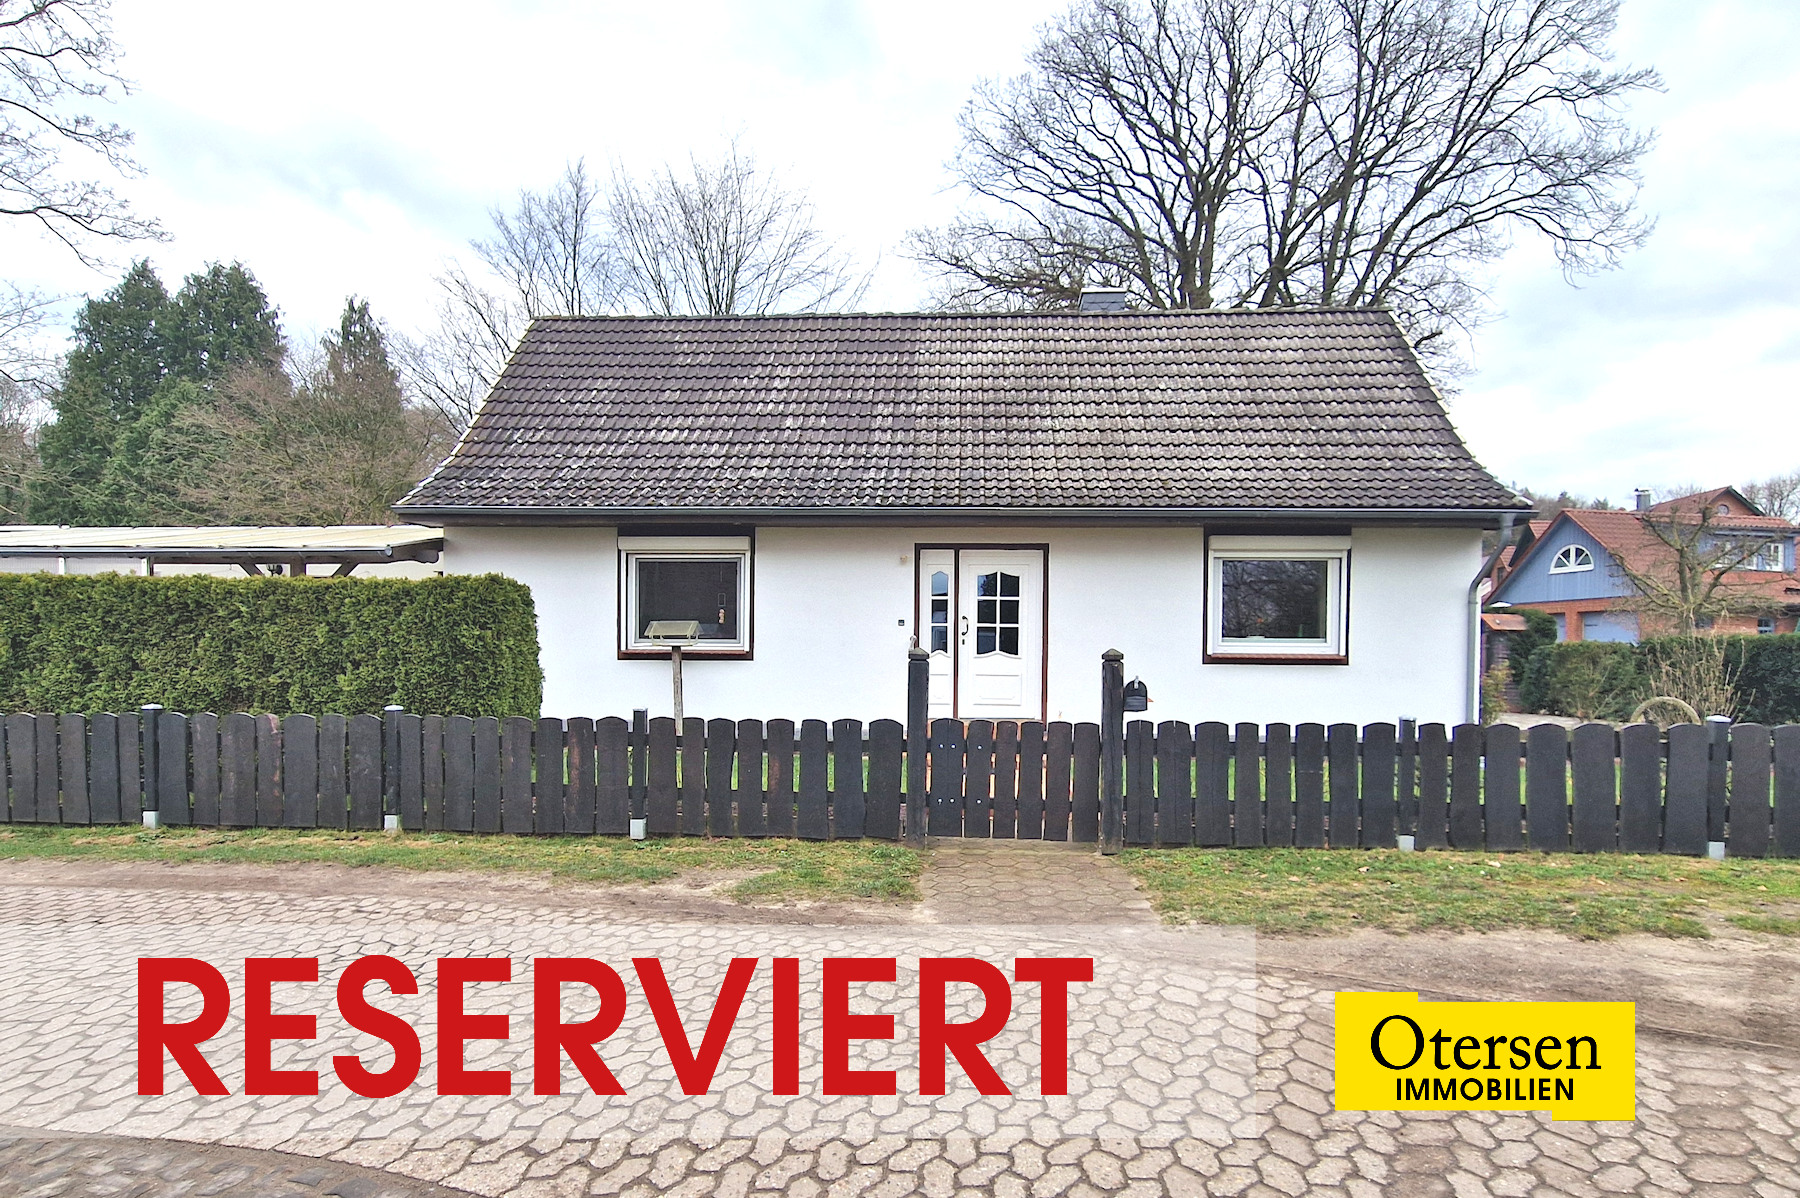 RESERVIERT! Hübsches, kleines 4-Zimmer-Haus in traumhafter Lage zwischen Schlossgarten und Weserwiesen